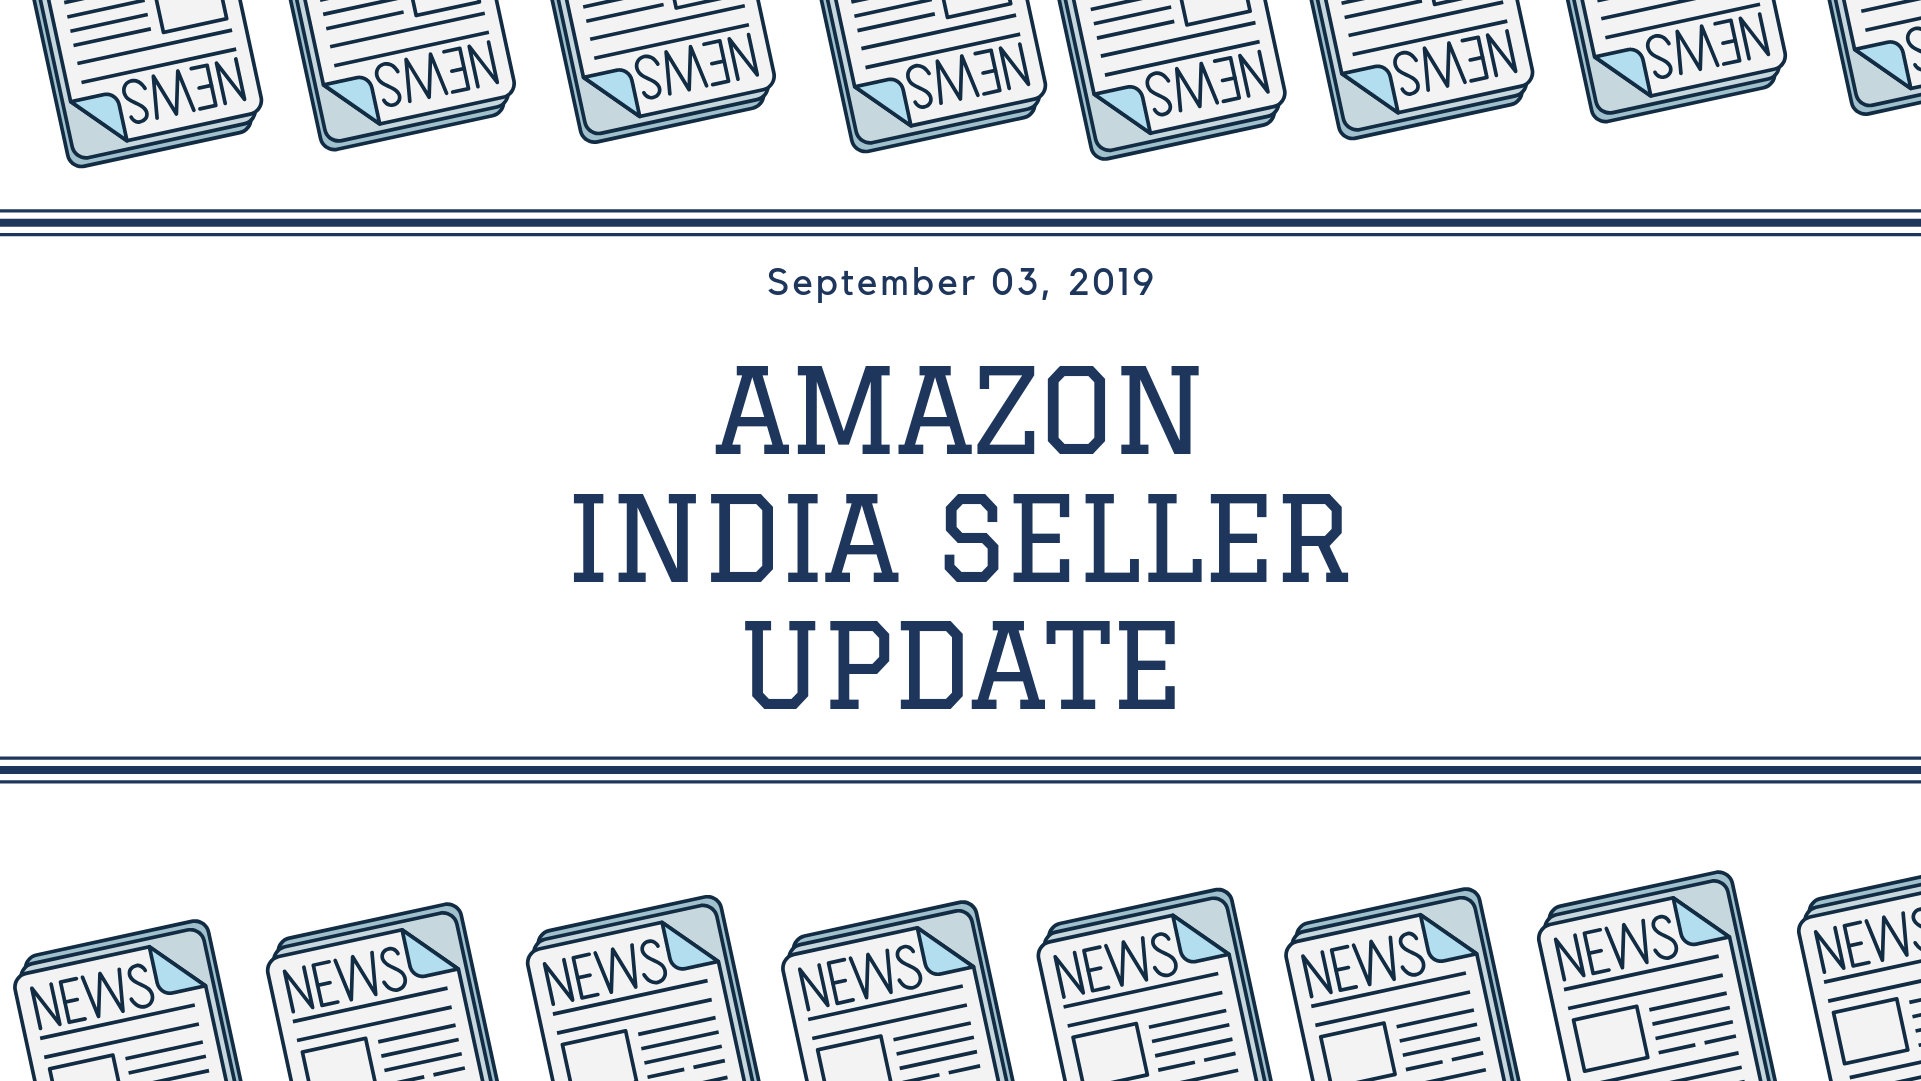 Amazon India Seller Update - 3 September 2019